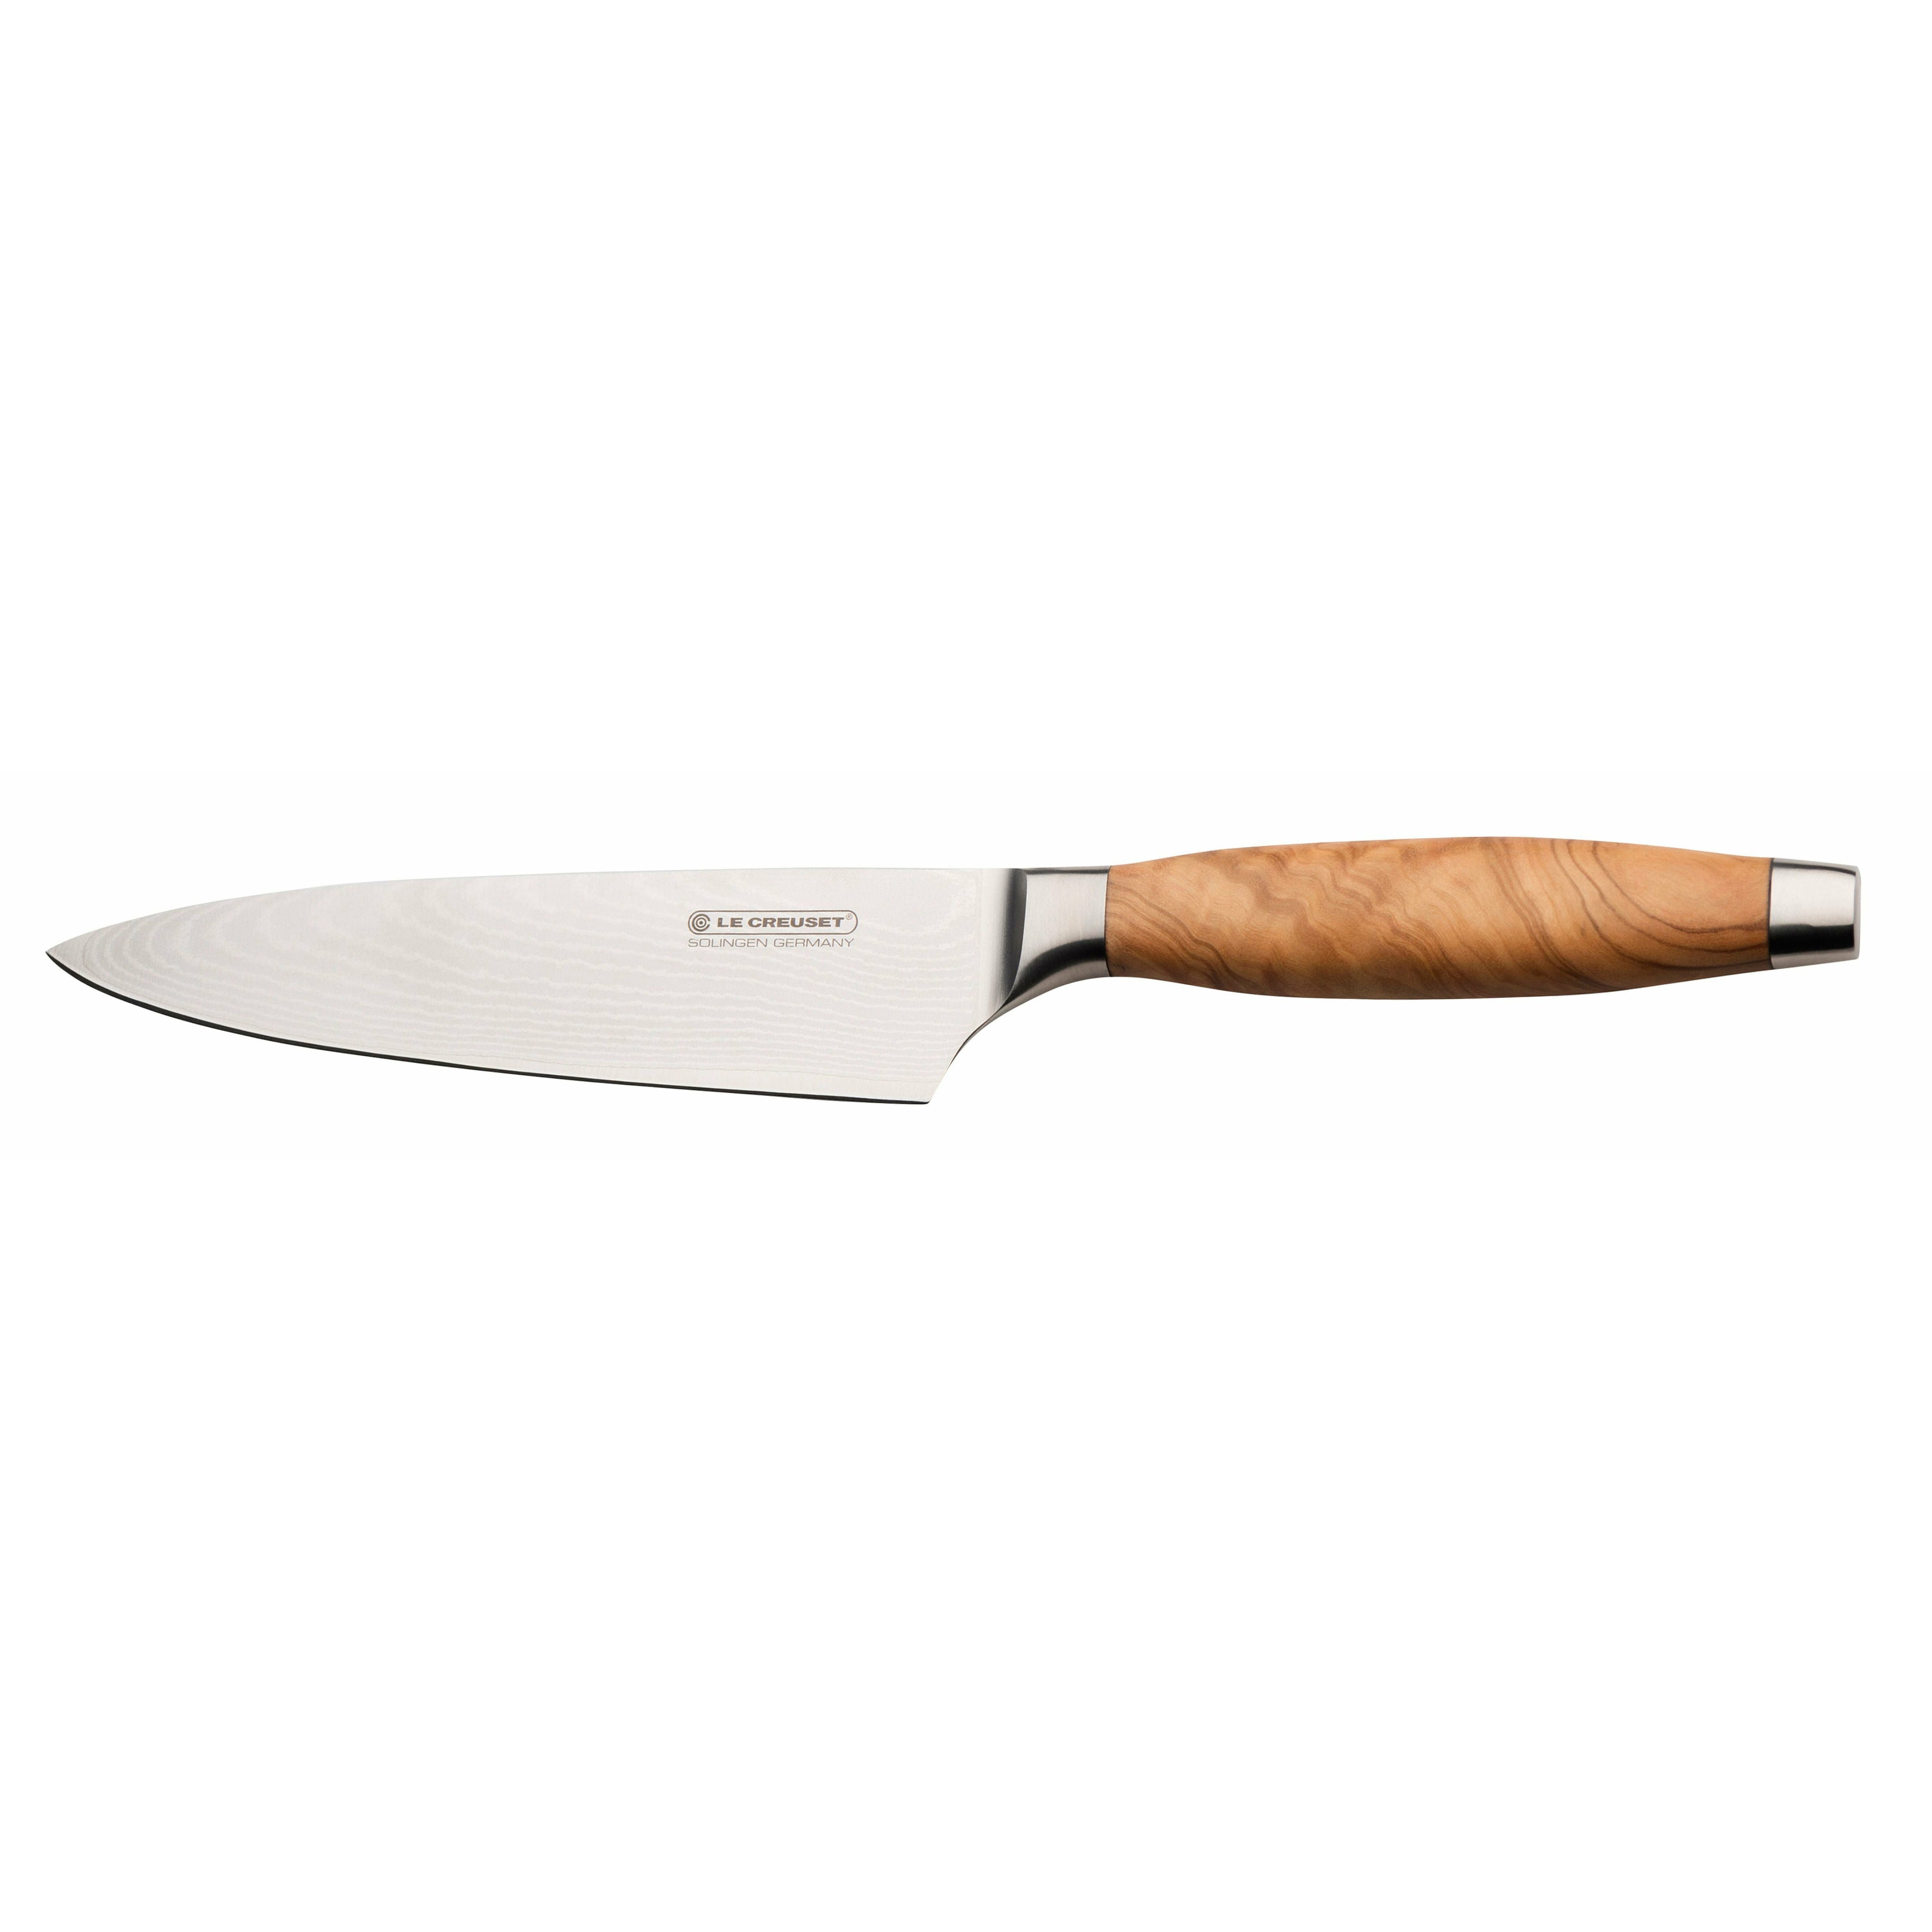 Le Creuset Chef's Knife Olive trehåndtak, 15 cm